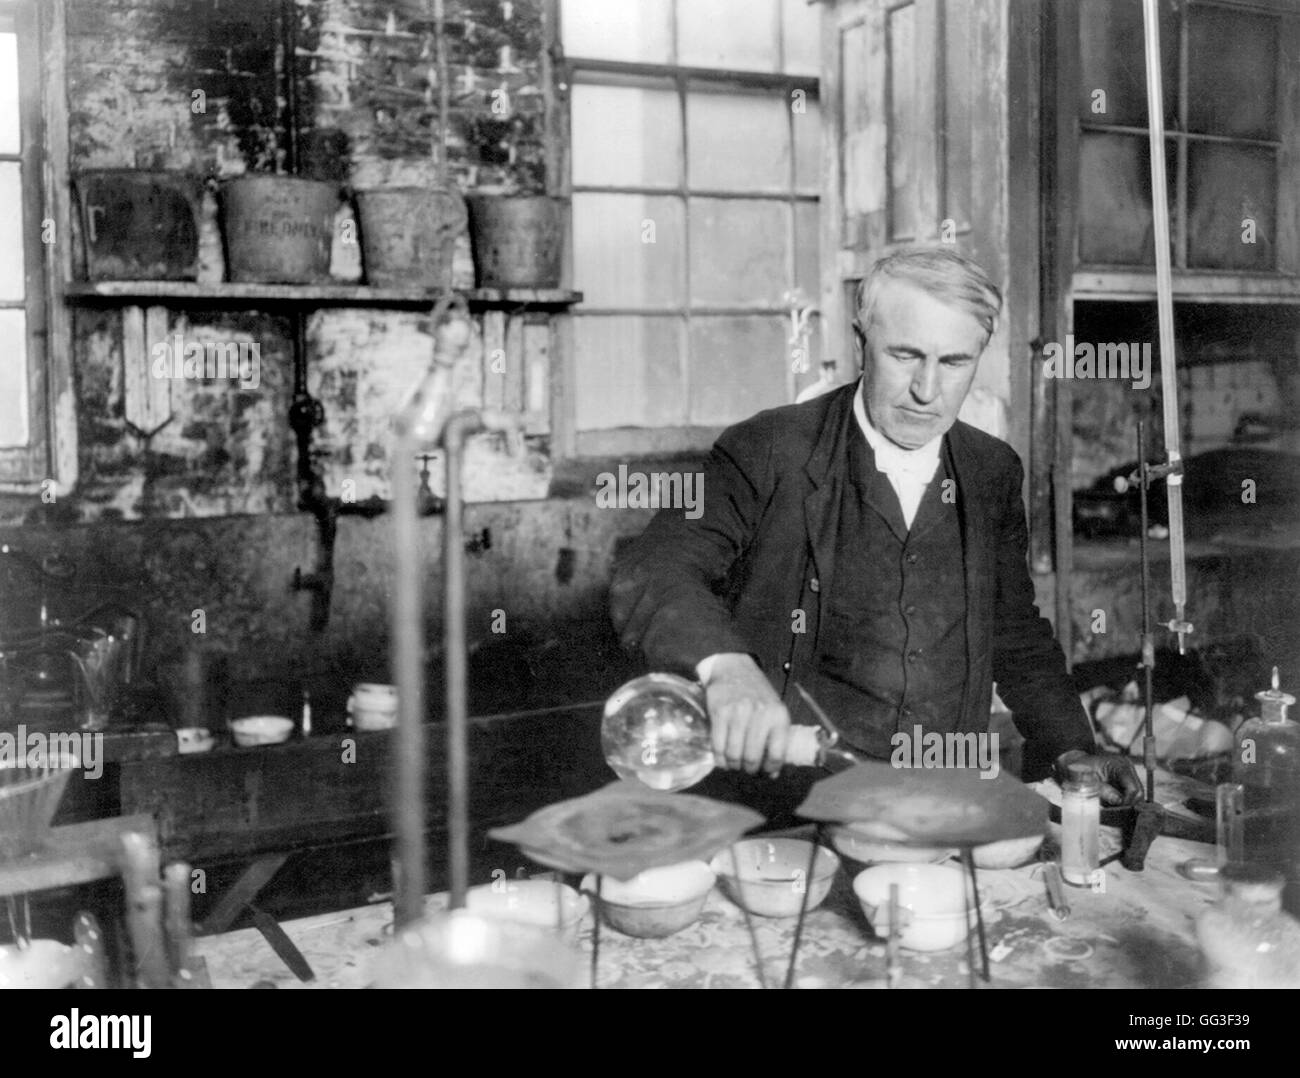 Thomas Edison. L'inventeur et homme d'affaires américain, Thomas Alva Edison (1847-1931), travaille dans son laboratoire de chimie. Portrait c.1905. Banque D'Images